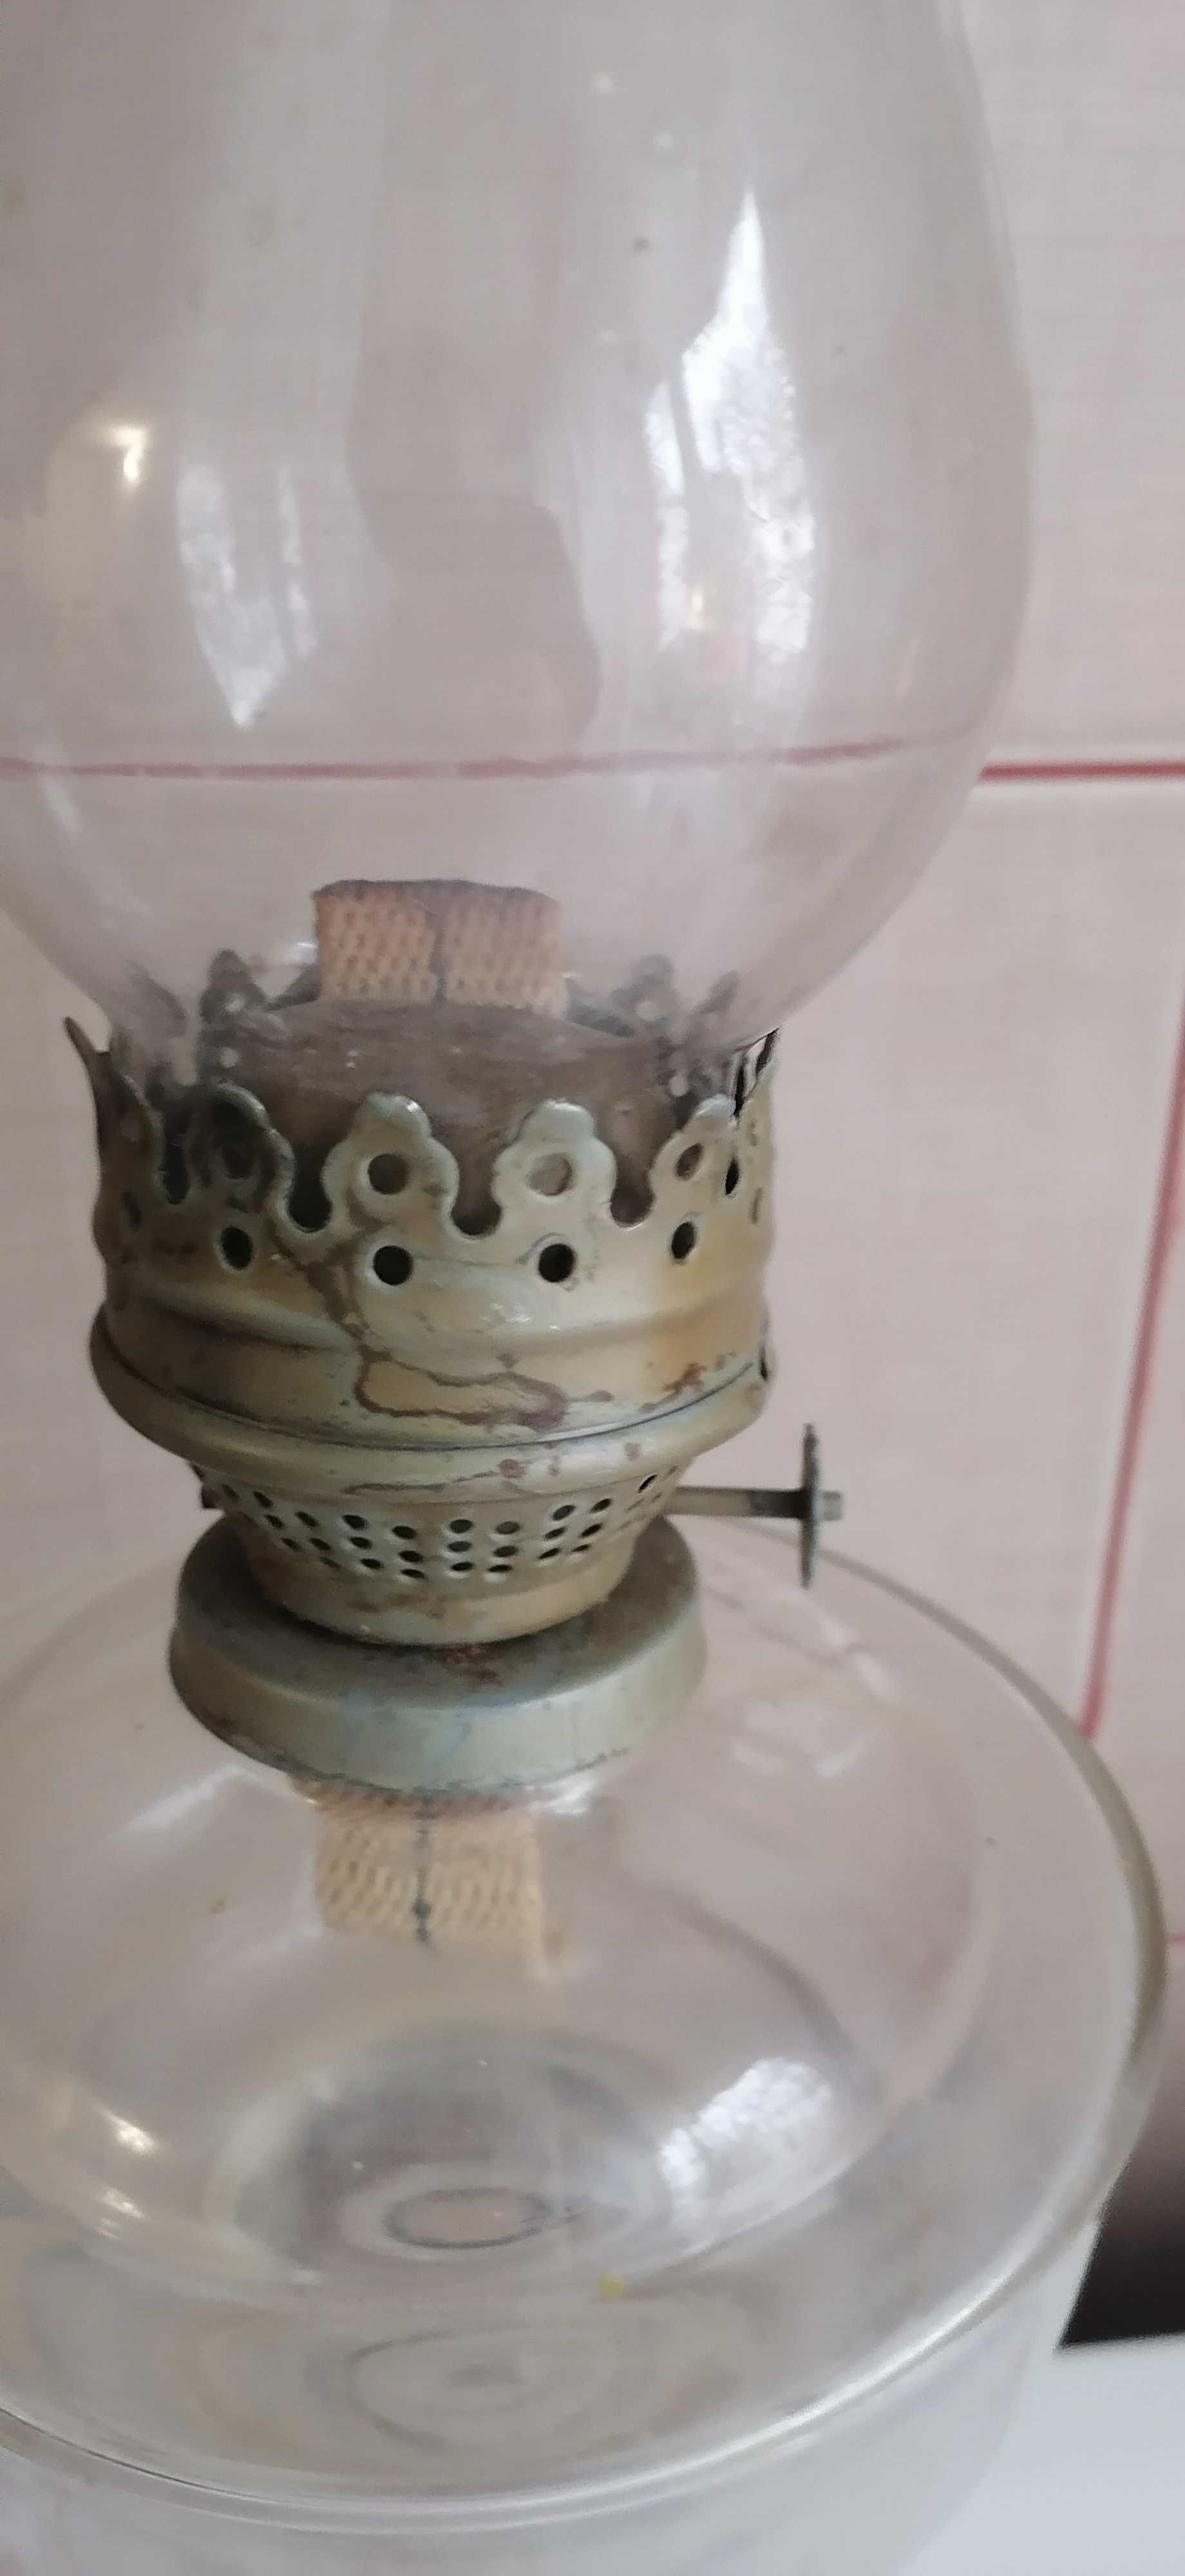 lampa  pe  gaz  din  sticla  50  cm  pret 150  lei